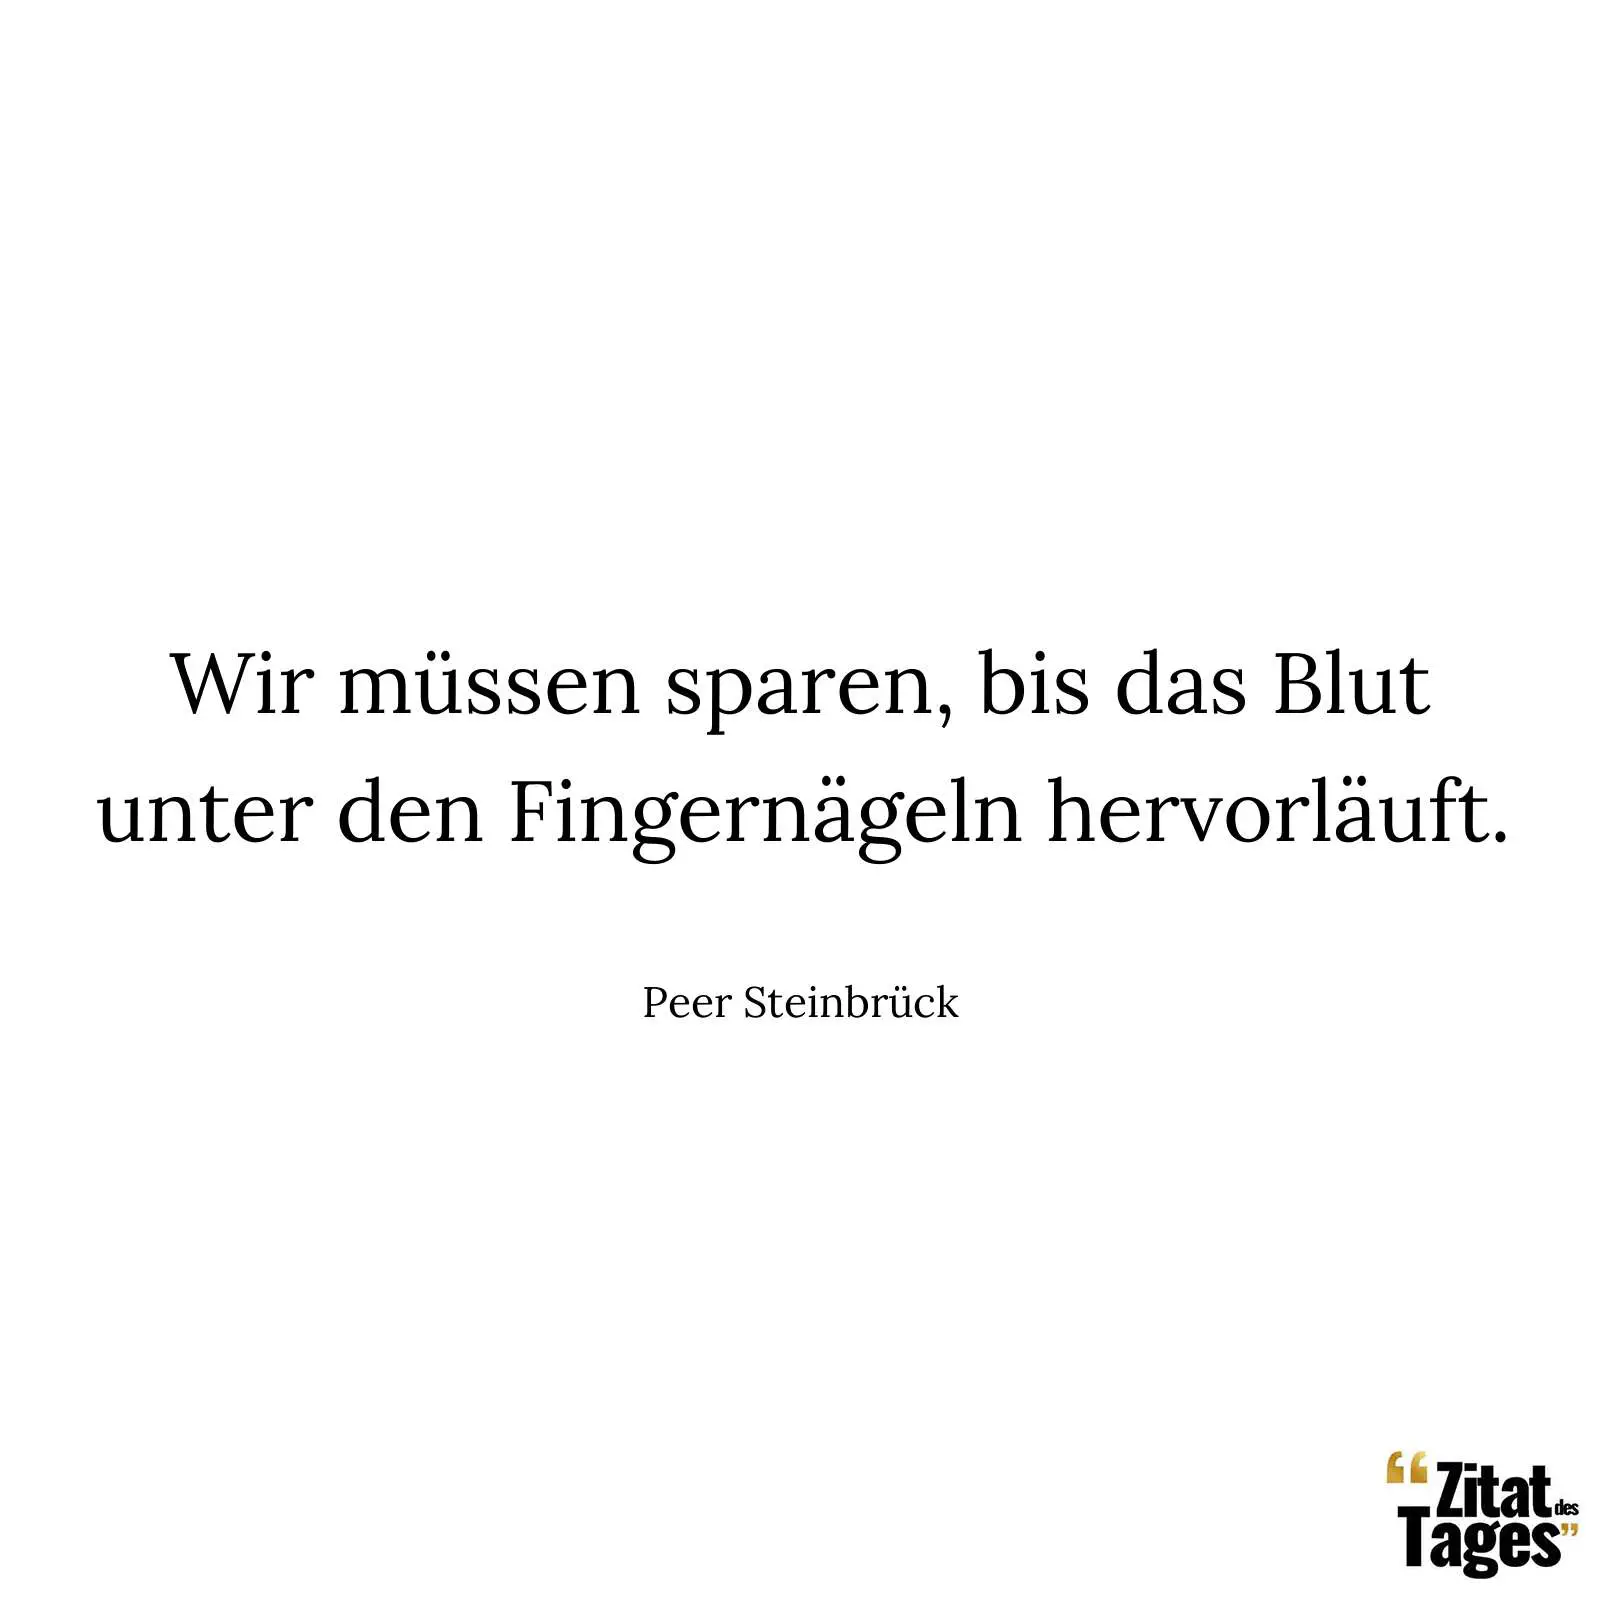 Wir müssen sparen, bis das Blut unter den Fingernägeln hervorläuft. - Peer Steinbrück